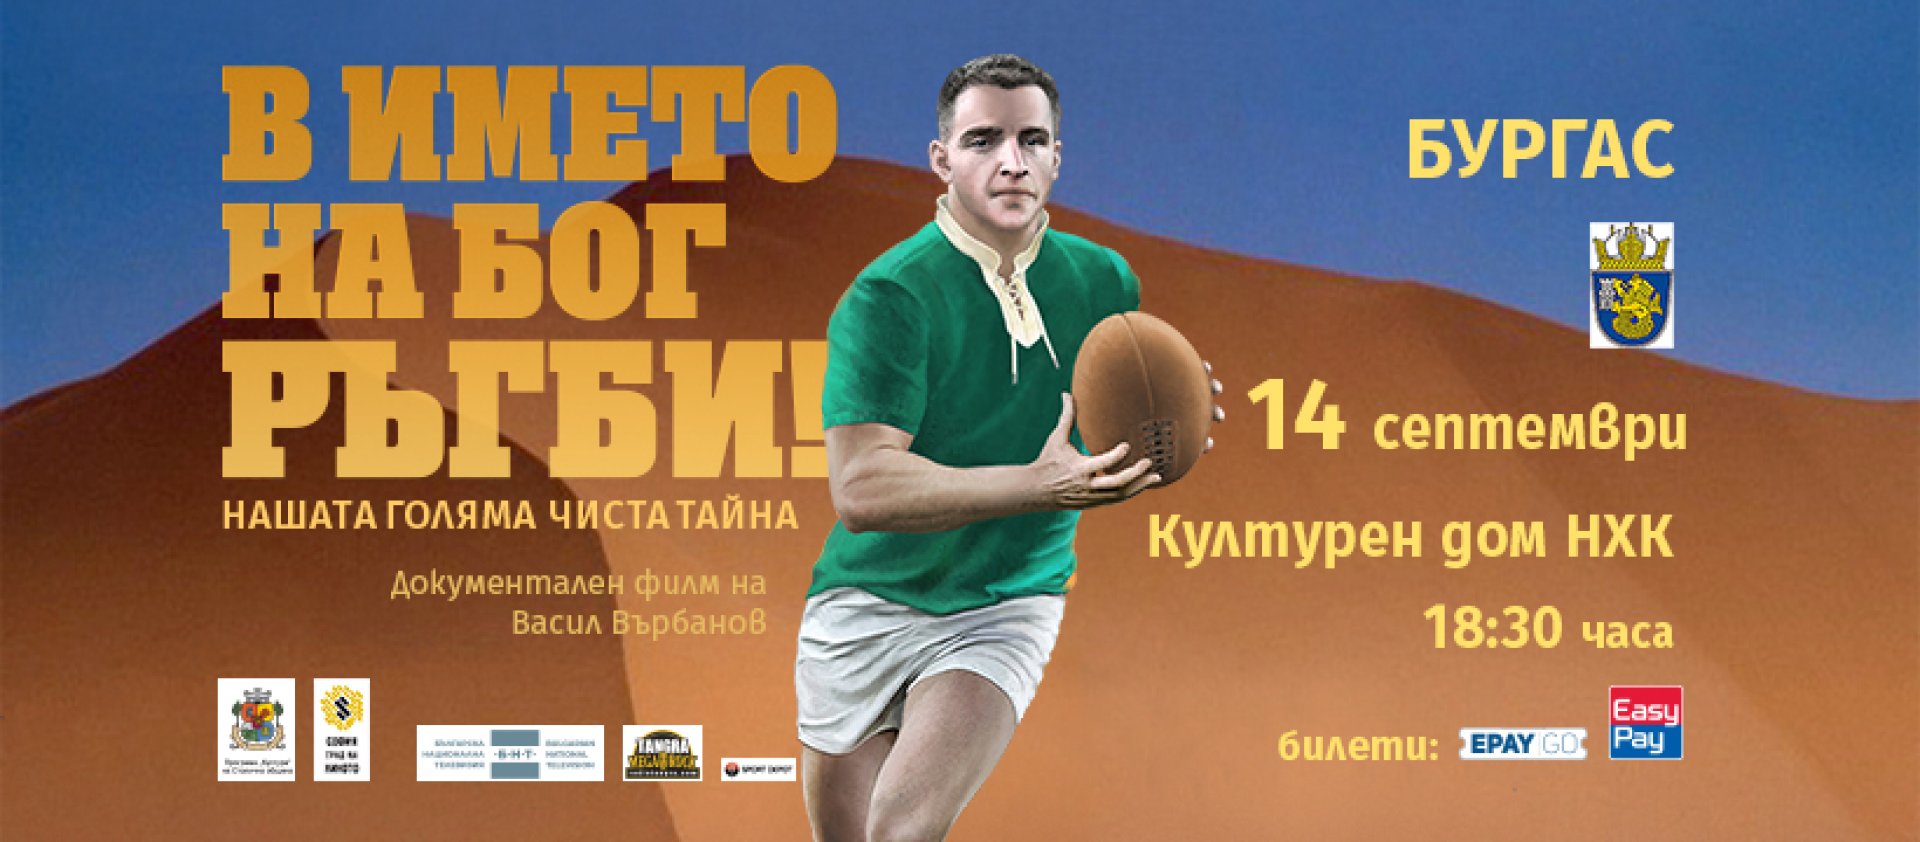 Гостуването на филма в Бургас съвпада с провеждането на турнира за Световната купа по ръгби